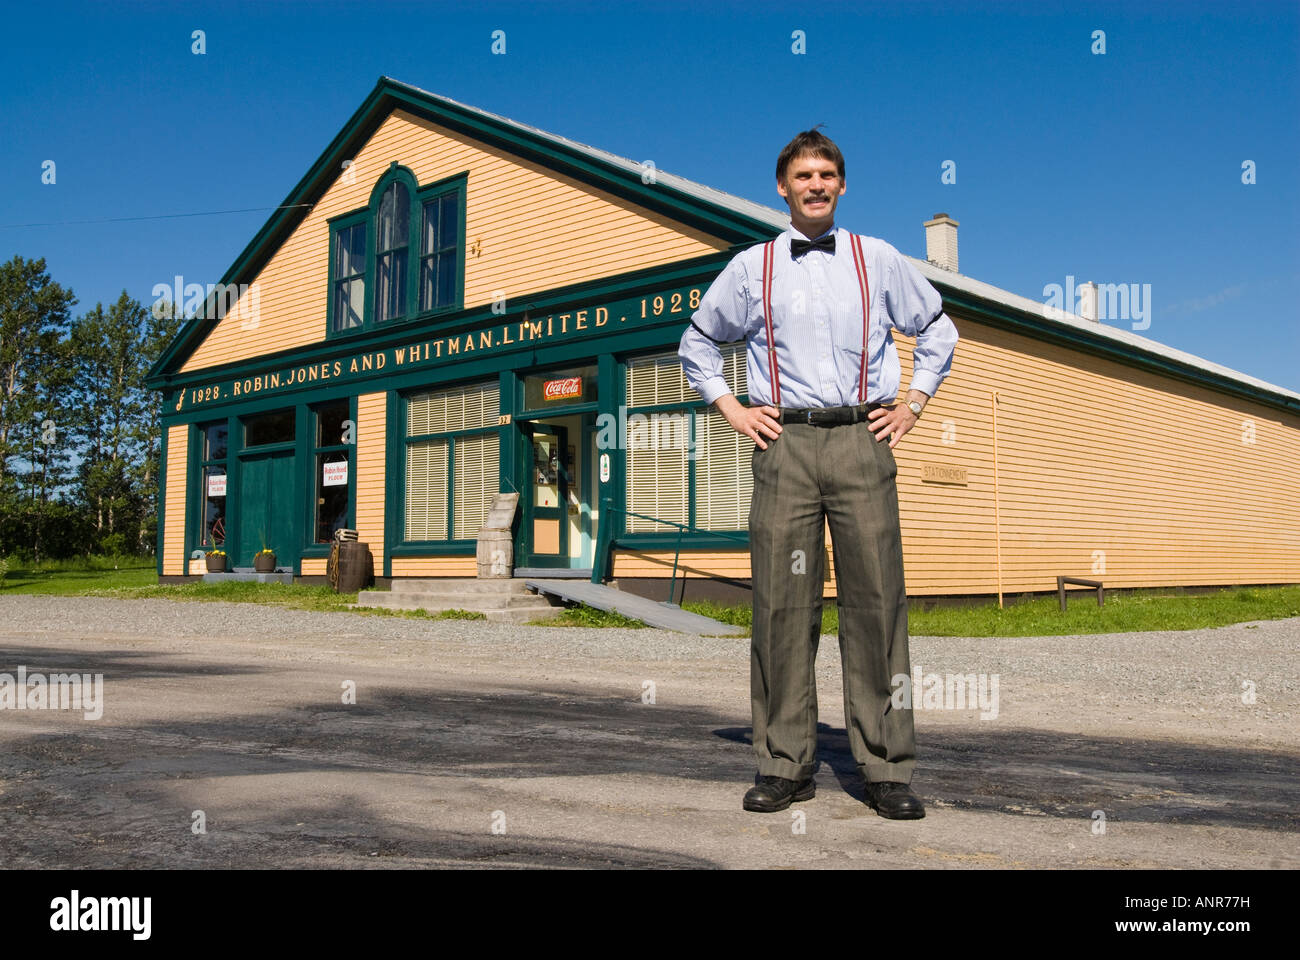 Robin Jones y Whitman almacén limitado museo sobre la península Gaspe, provincia de Quebec, Canadá. Foto de stock